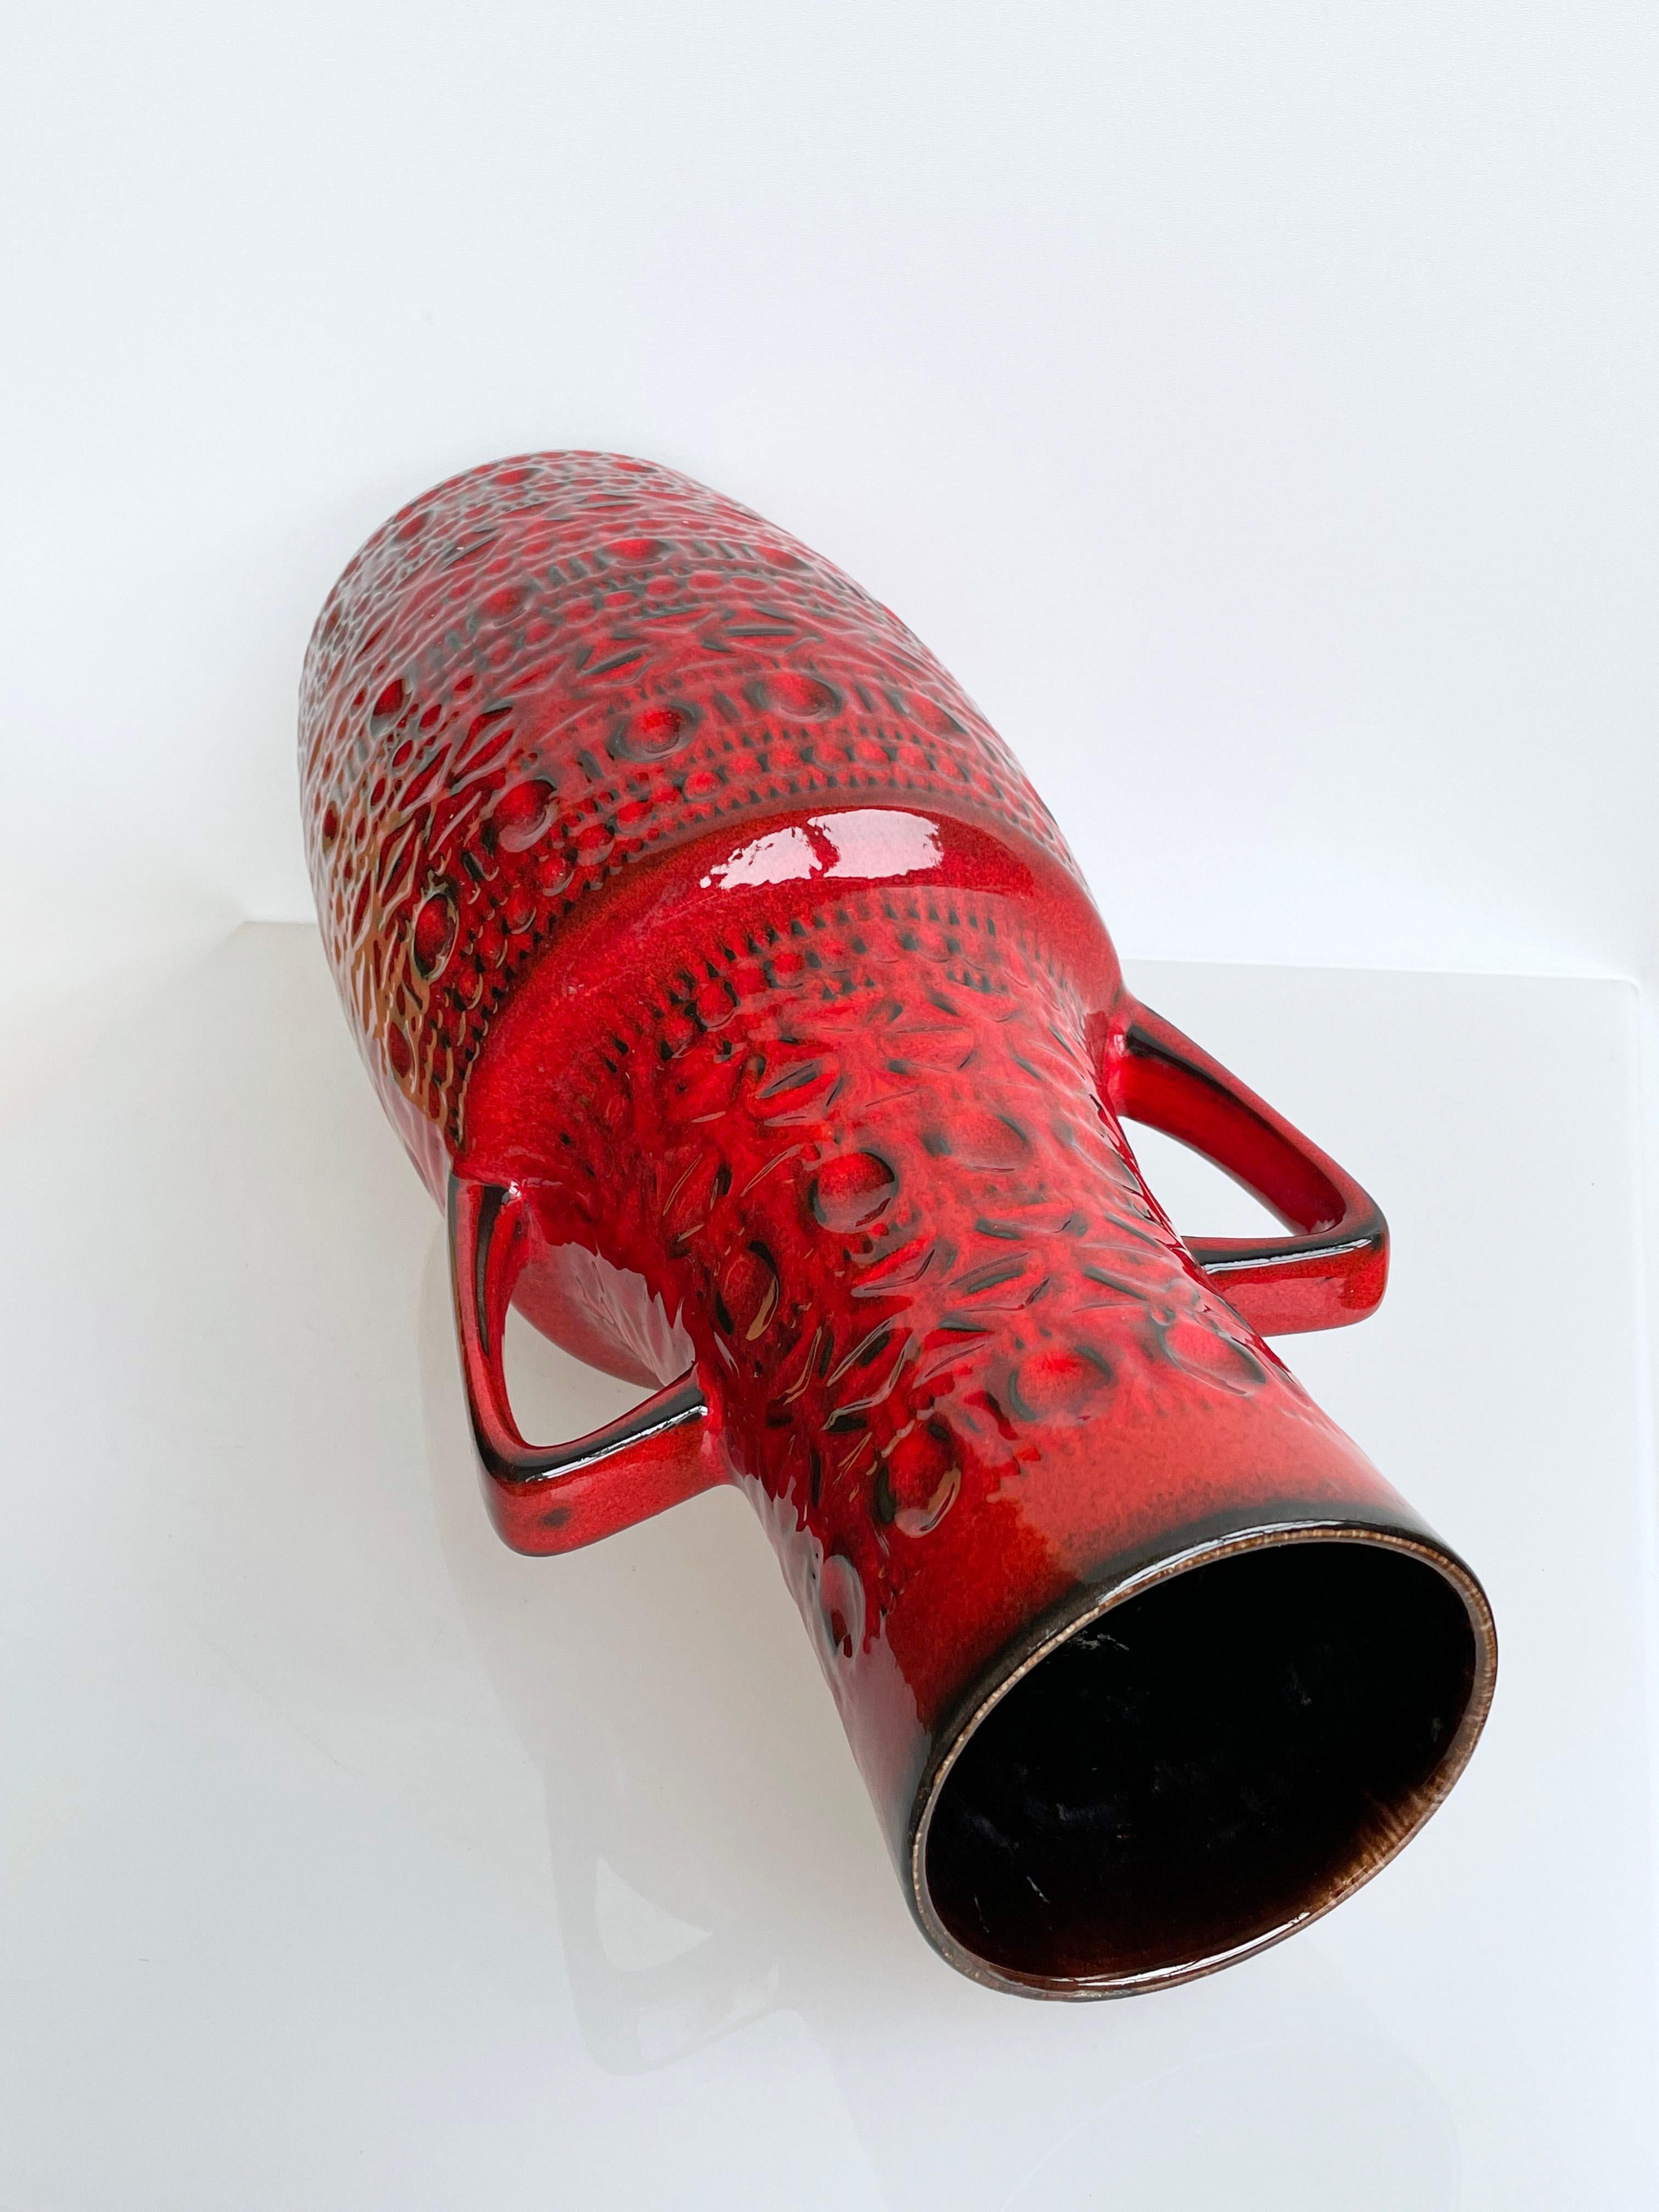 Große dekorative Vase von Bodo Mans, hergestellt von Bay Keramik (W.Deutschland) in den späten 60er bis Mitte der 1970er Jahre. Mit typischem Bodo Mans-Reliefmuster und roter Glasur in Pillendose. Nummeriert auf dem Sockel: 508-45 (46 cm Höhe).